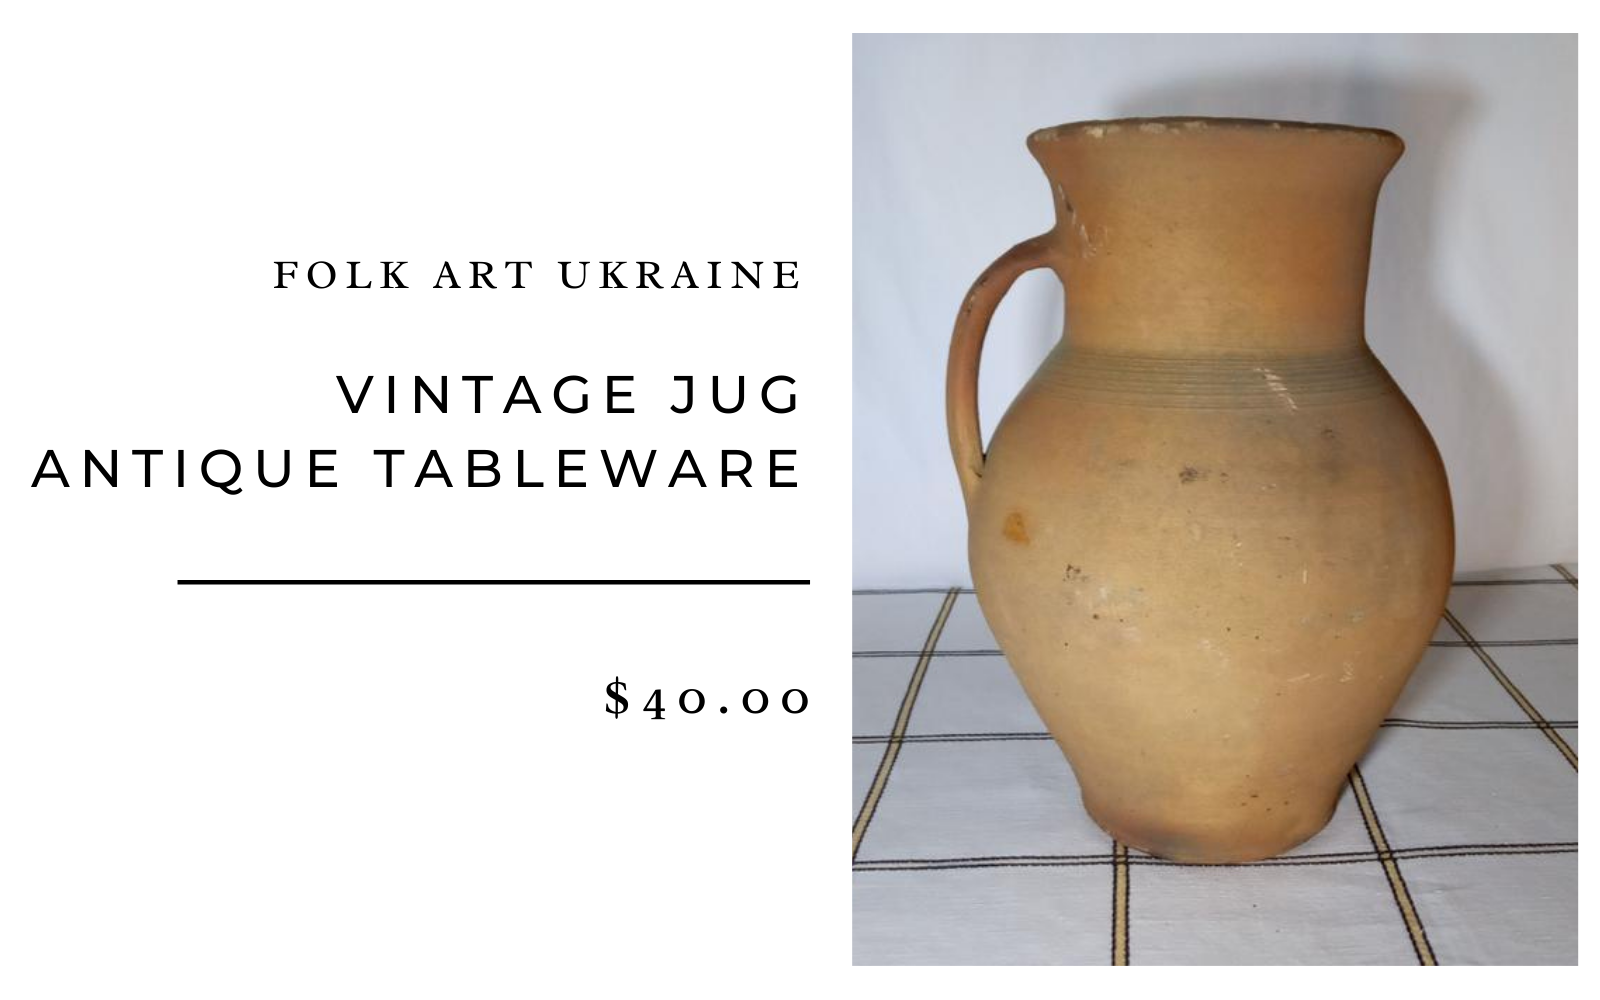 Folk Art Ukraine Vintage Jug Antique Tableware